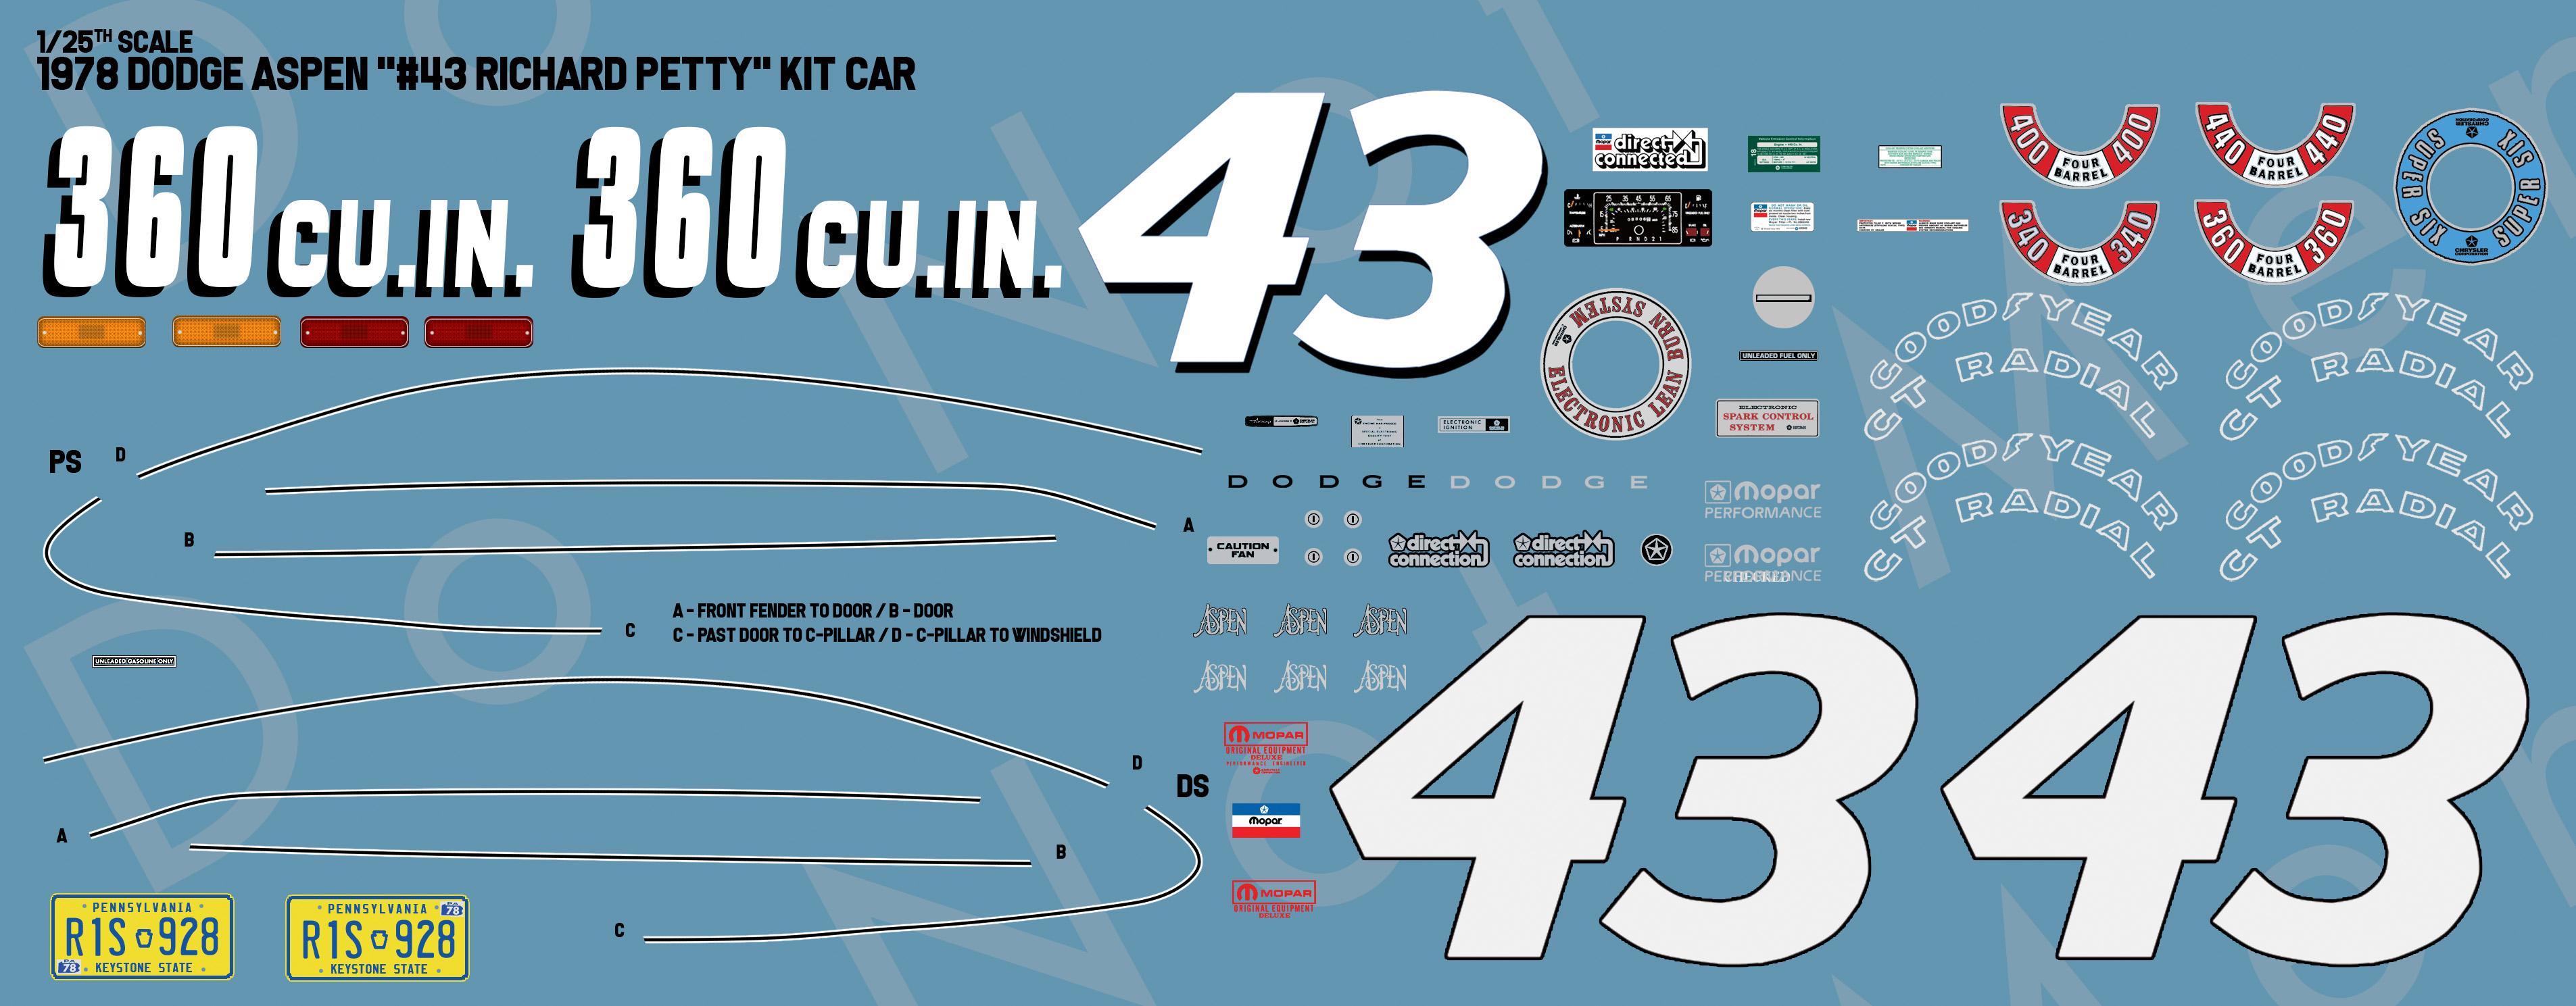 1978 Dodge Aspen #43 Richard Petty Kit Car